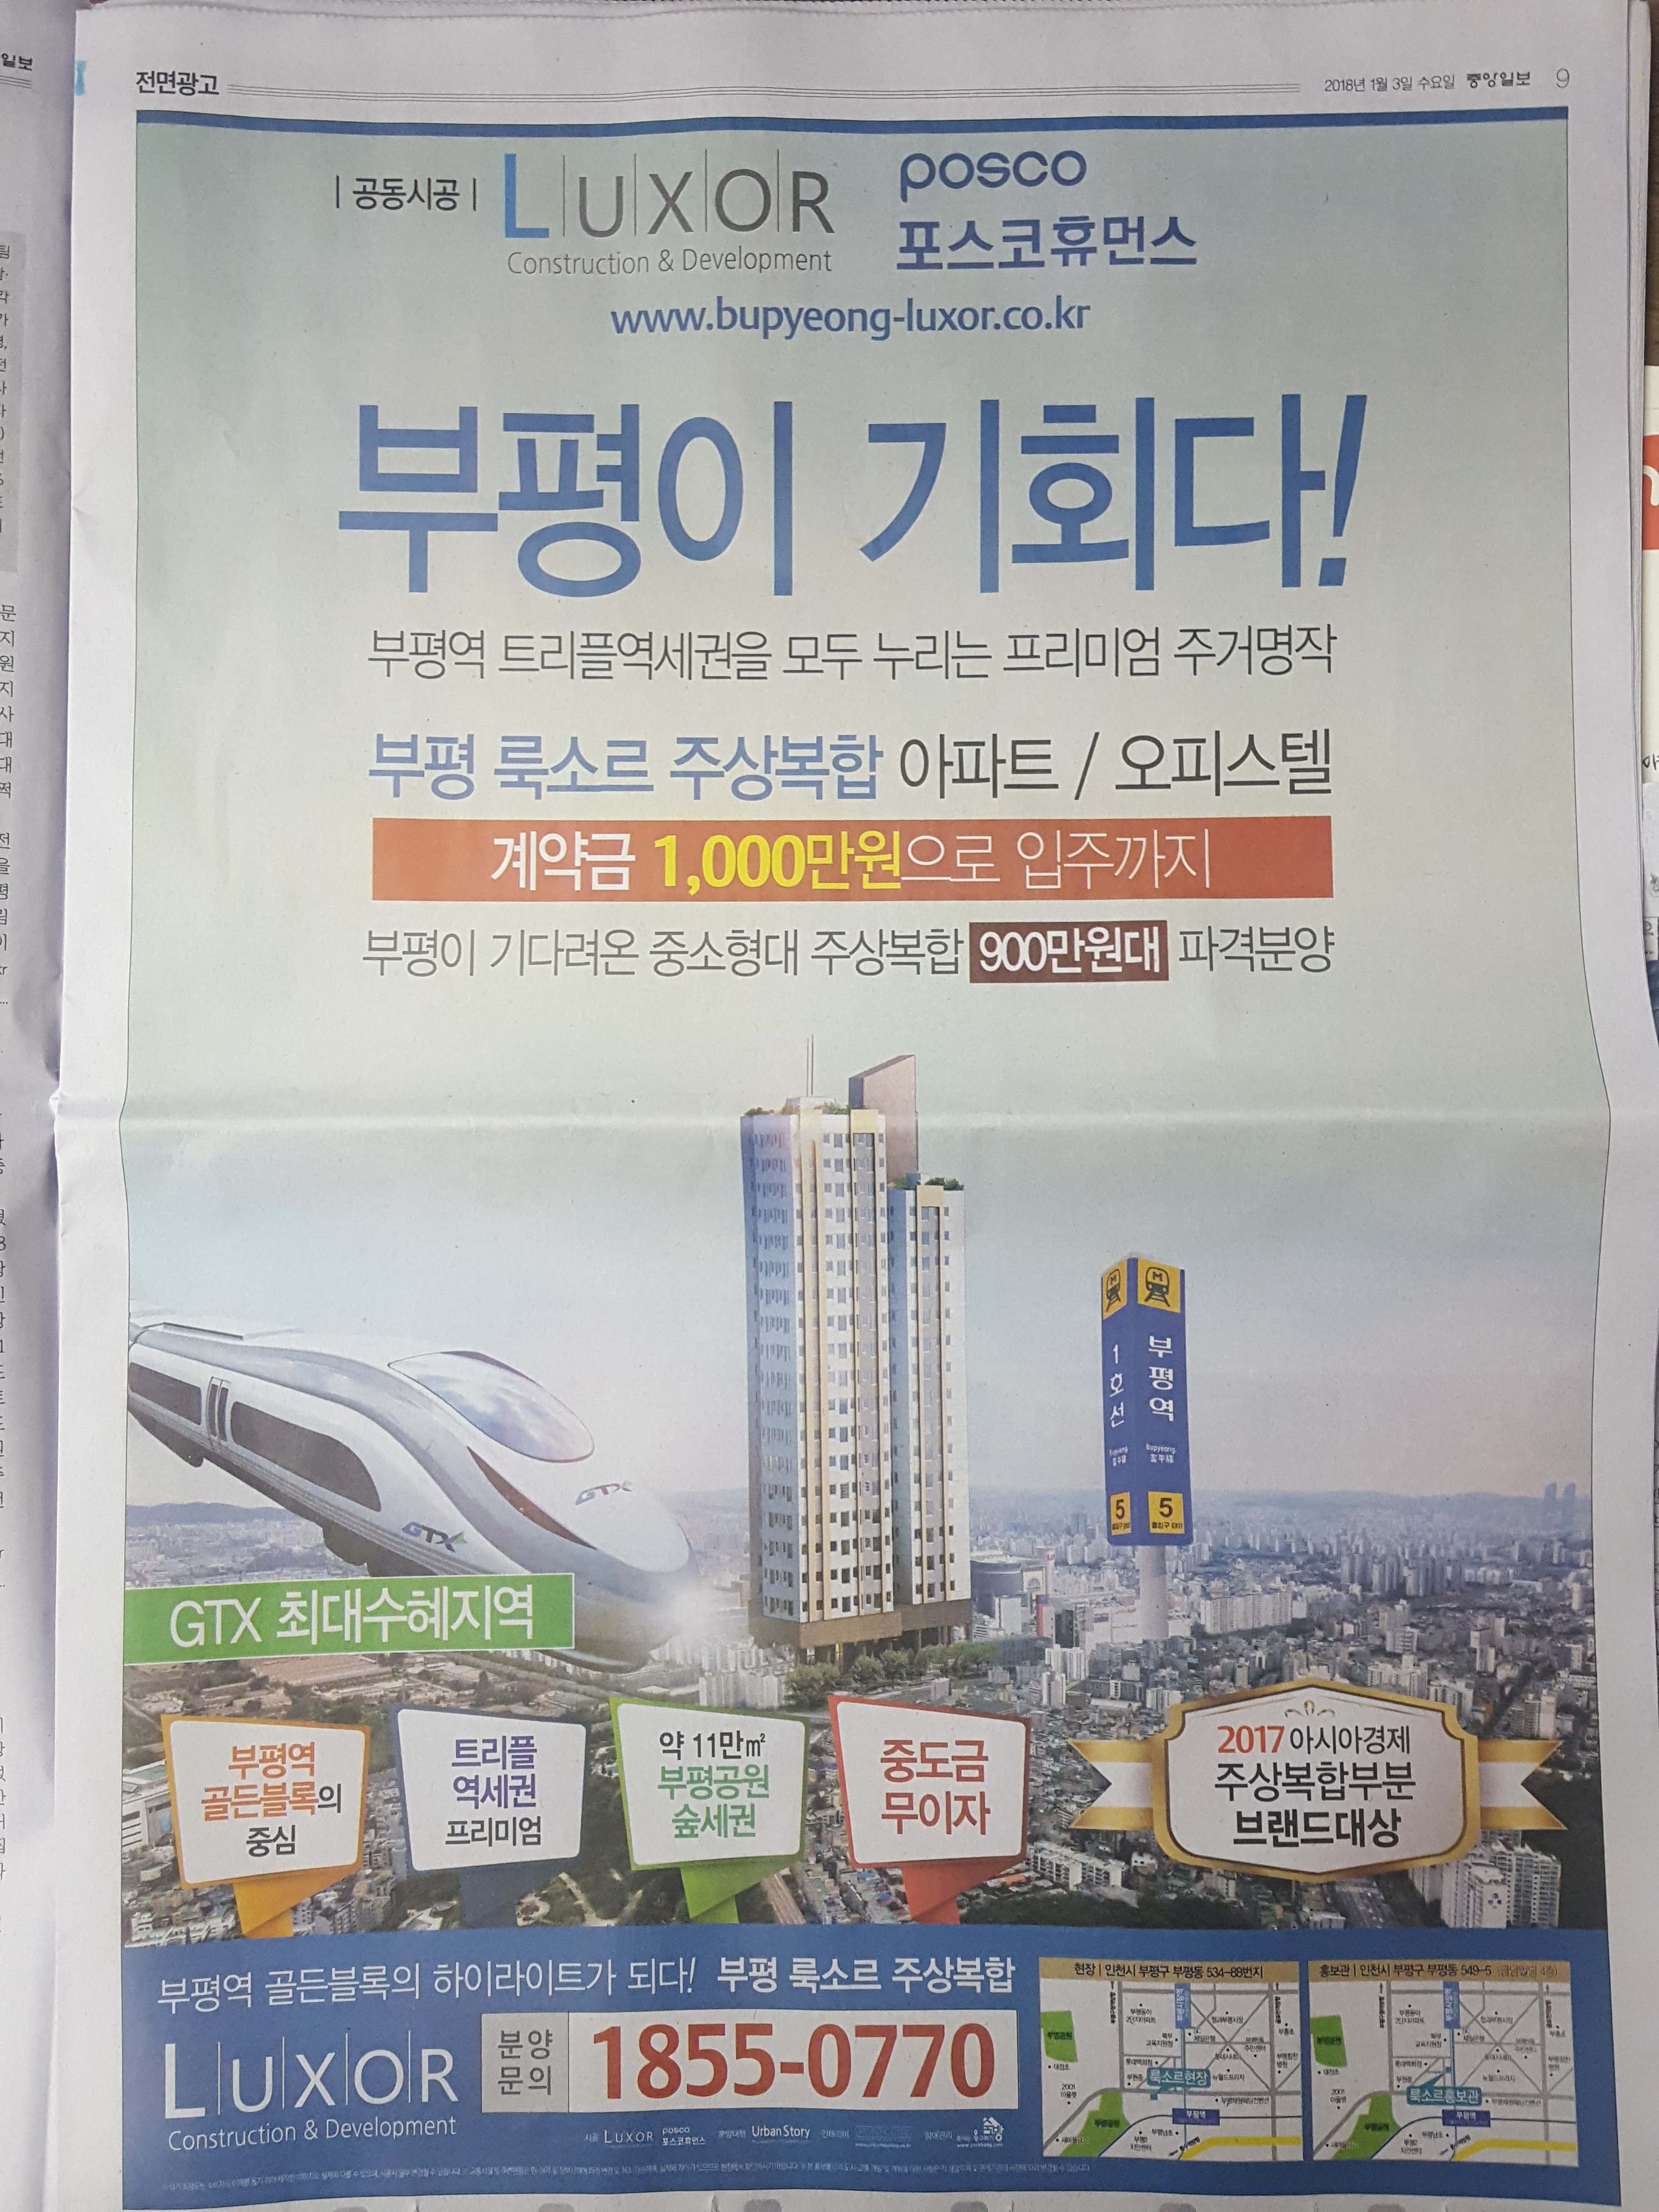 1월 3일 중앙일보 9 부평 룩소르 주상복합 - 전면.jpg